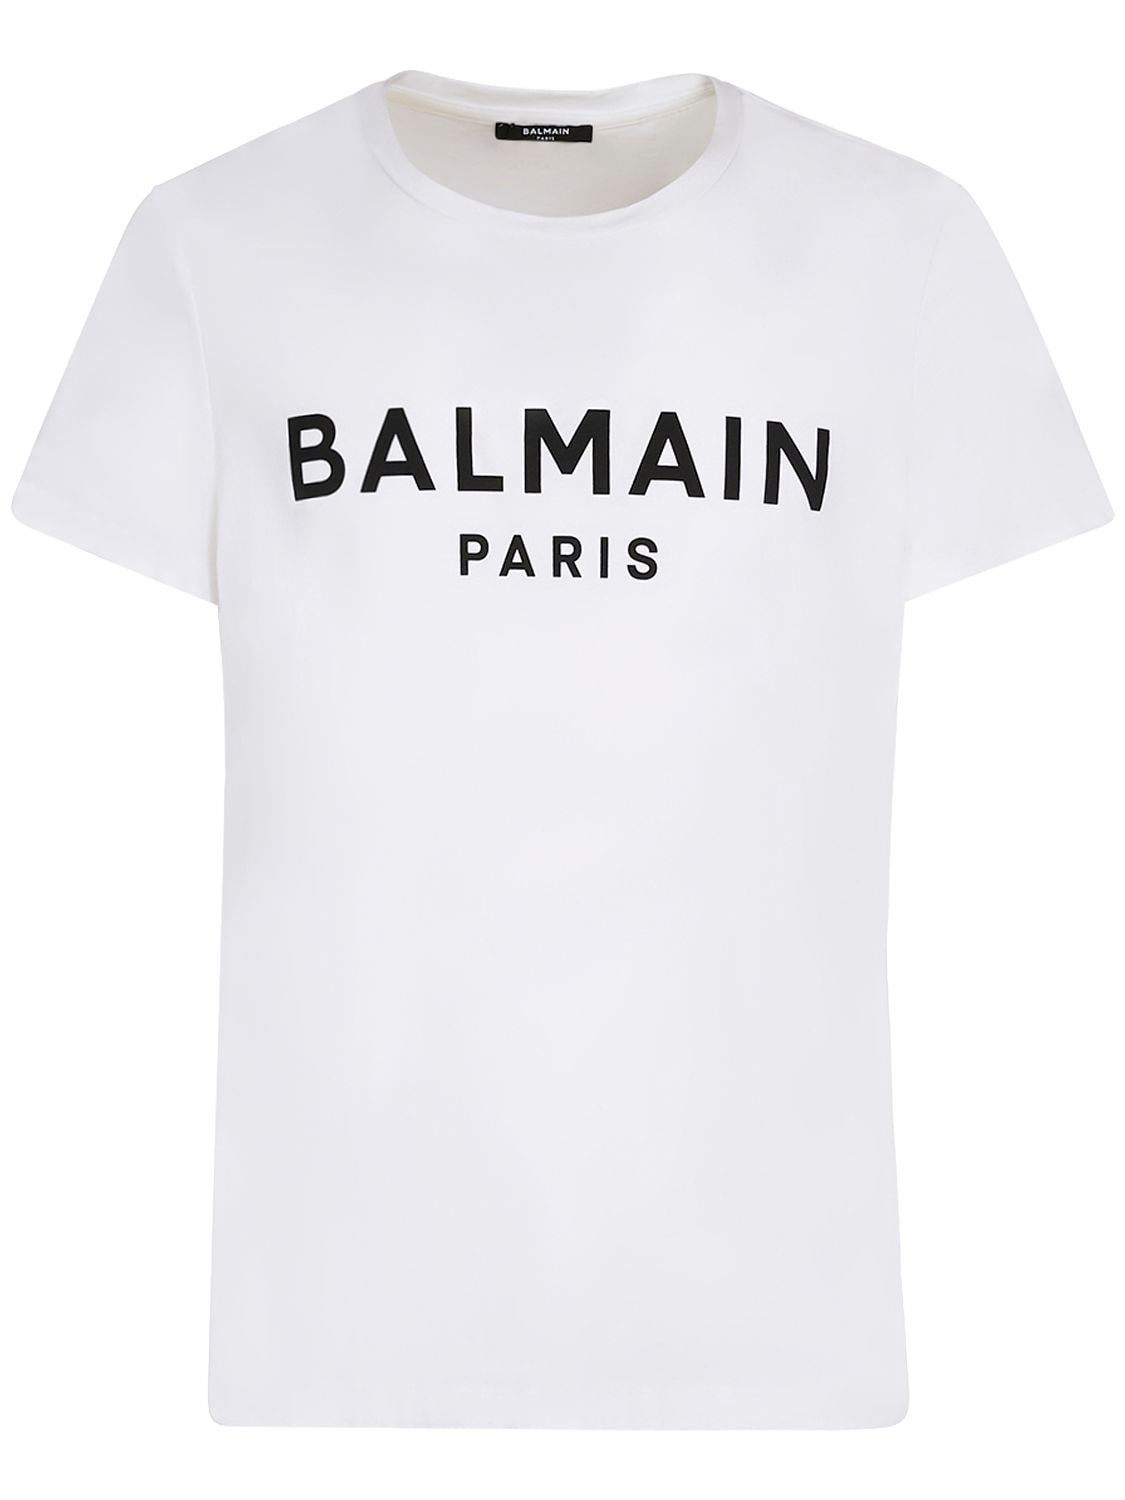 Bedrucktes T-shirt Aus Baumwolle - BALMAIN - Modalova